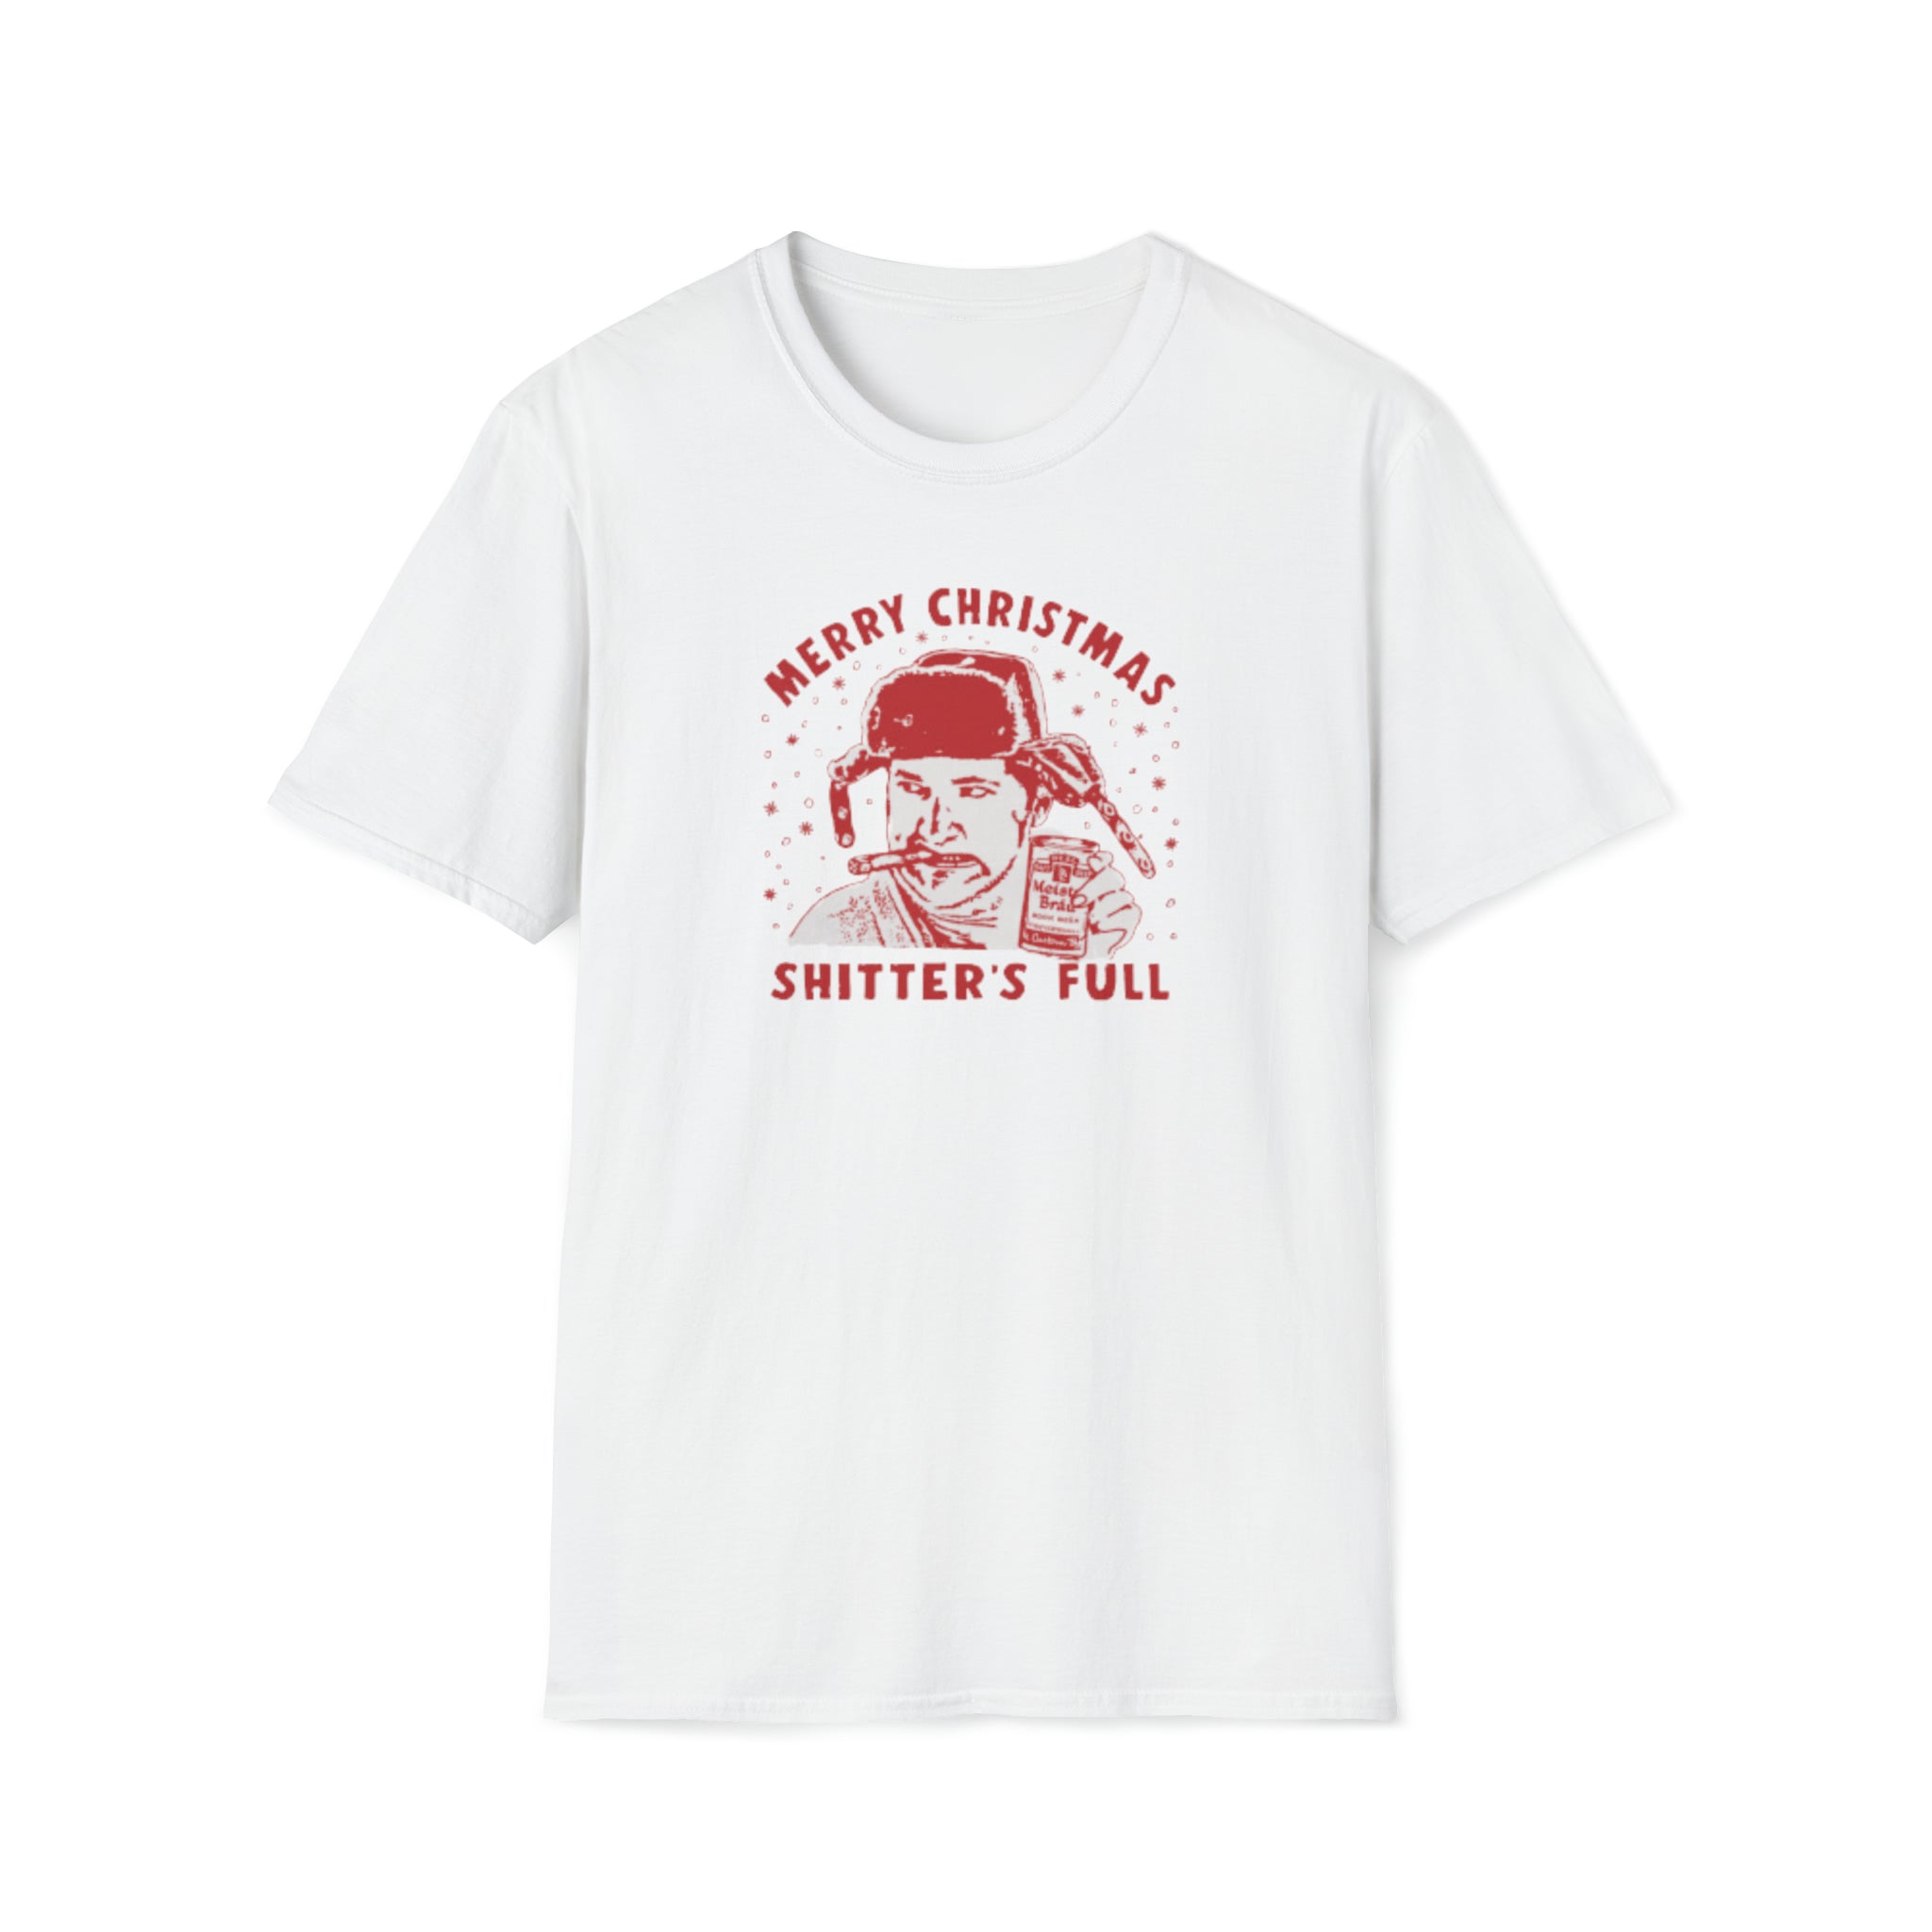 Shitter's Full T-Shirt